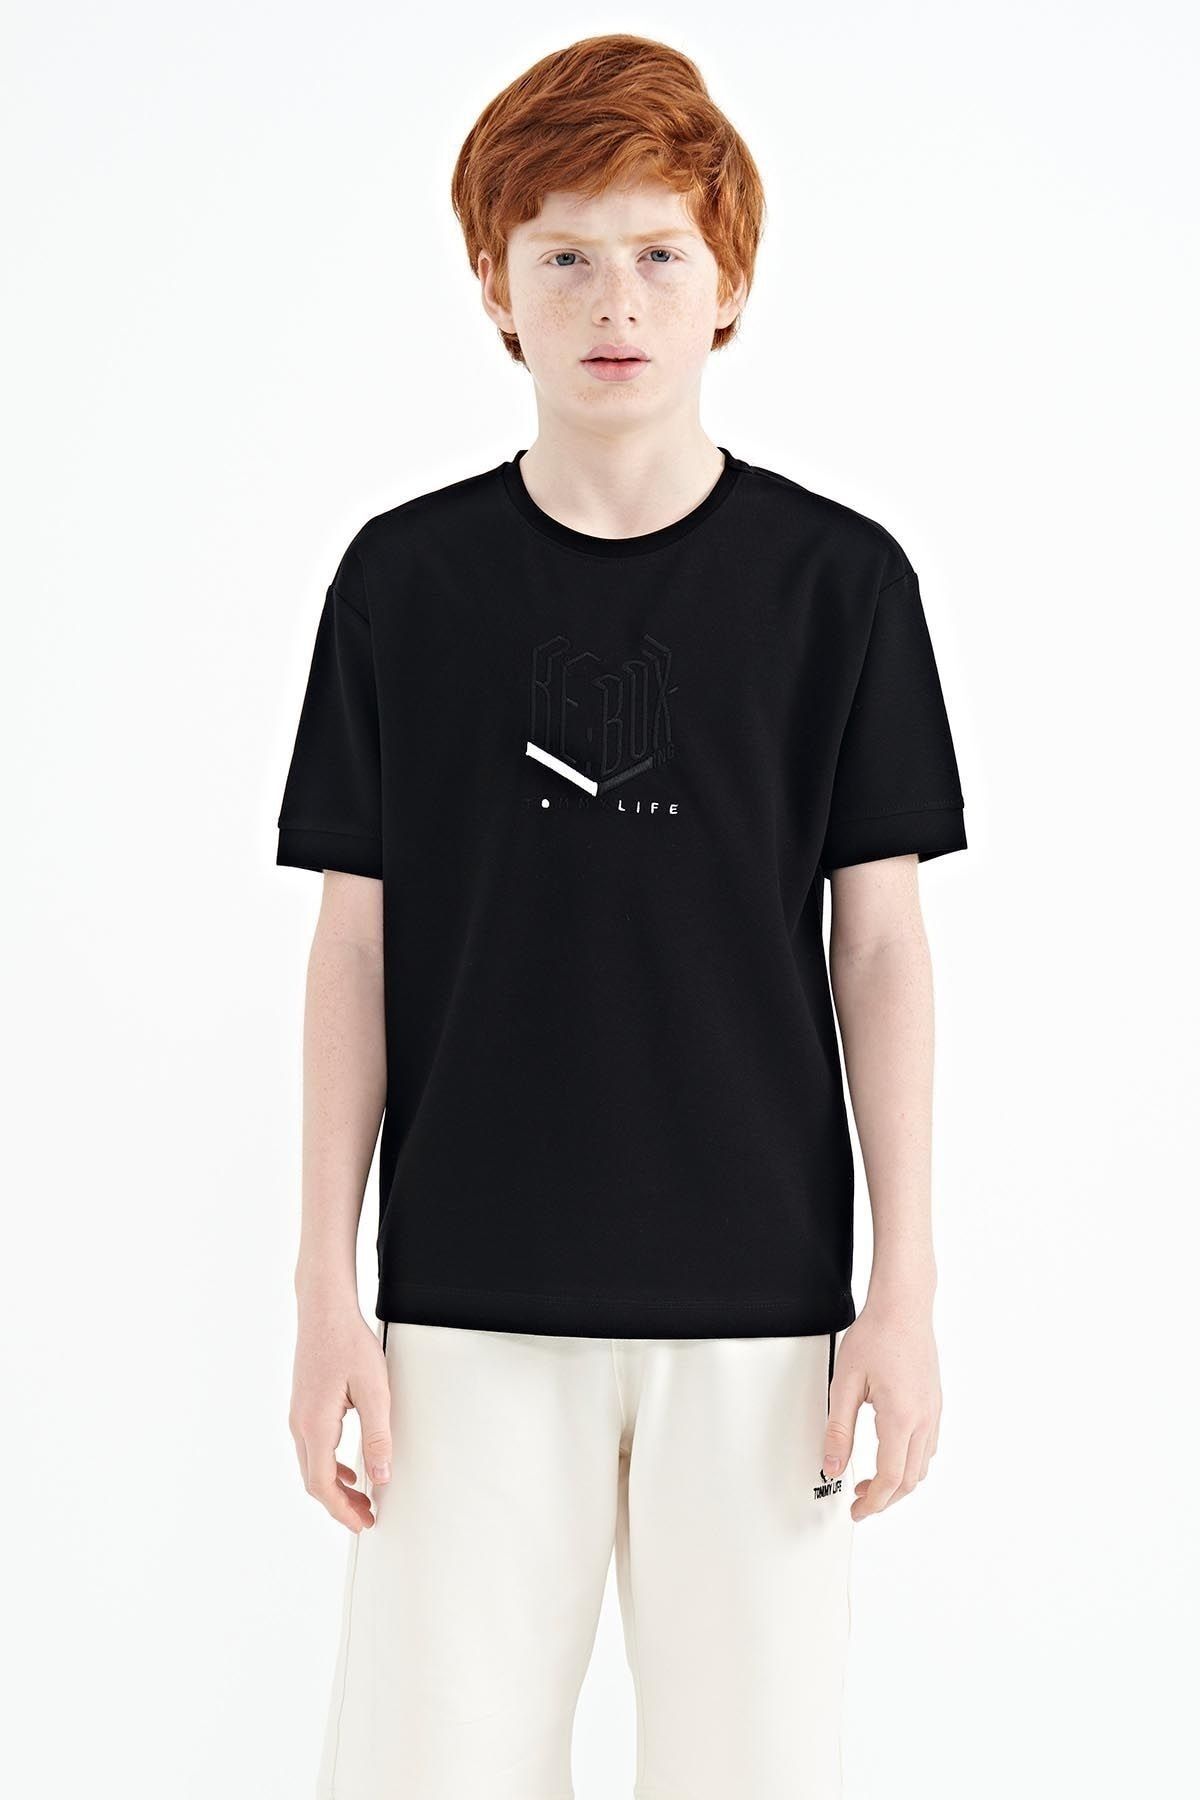 TOMMY LIFE Siyah Yazı Nakışlı O Yaka Oversize Erkek Çocuk T-shirt - 11151